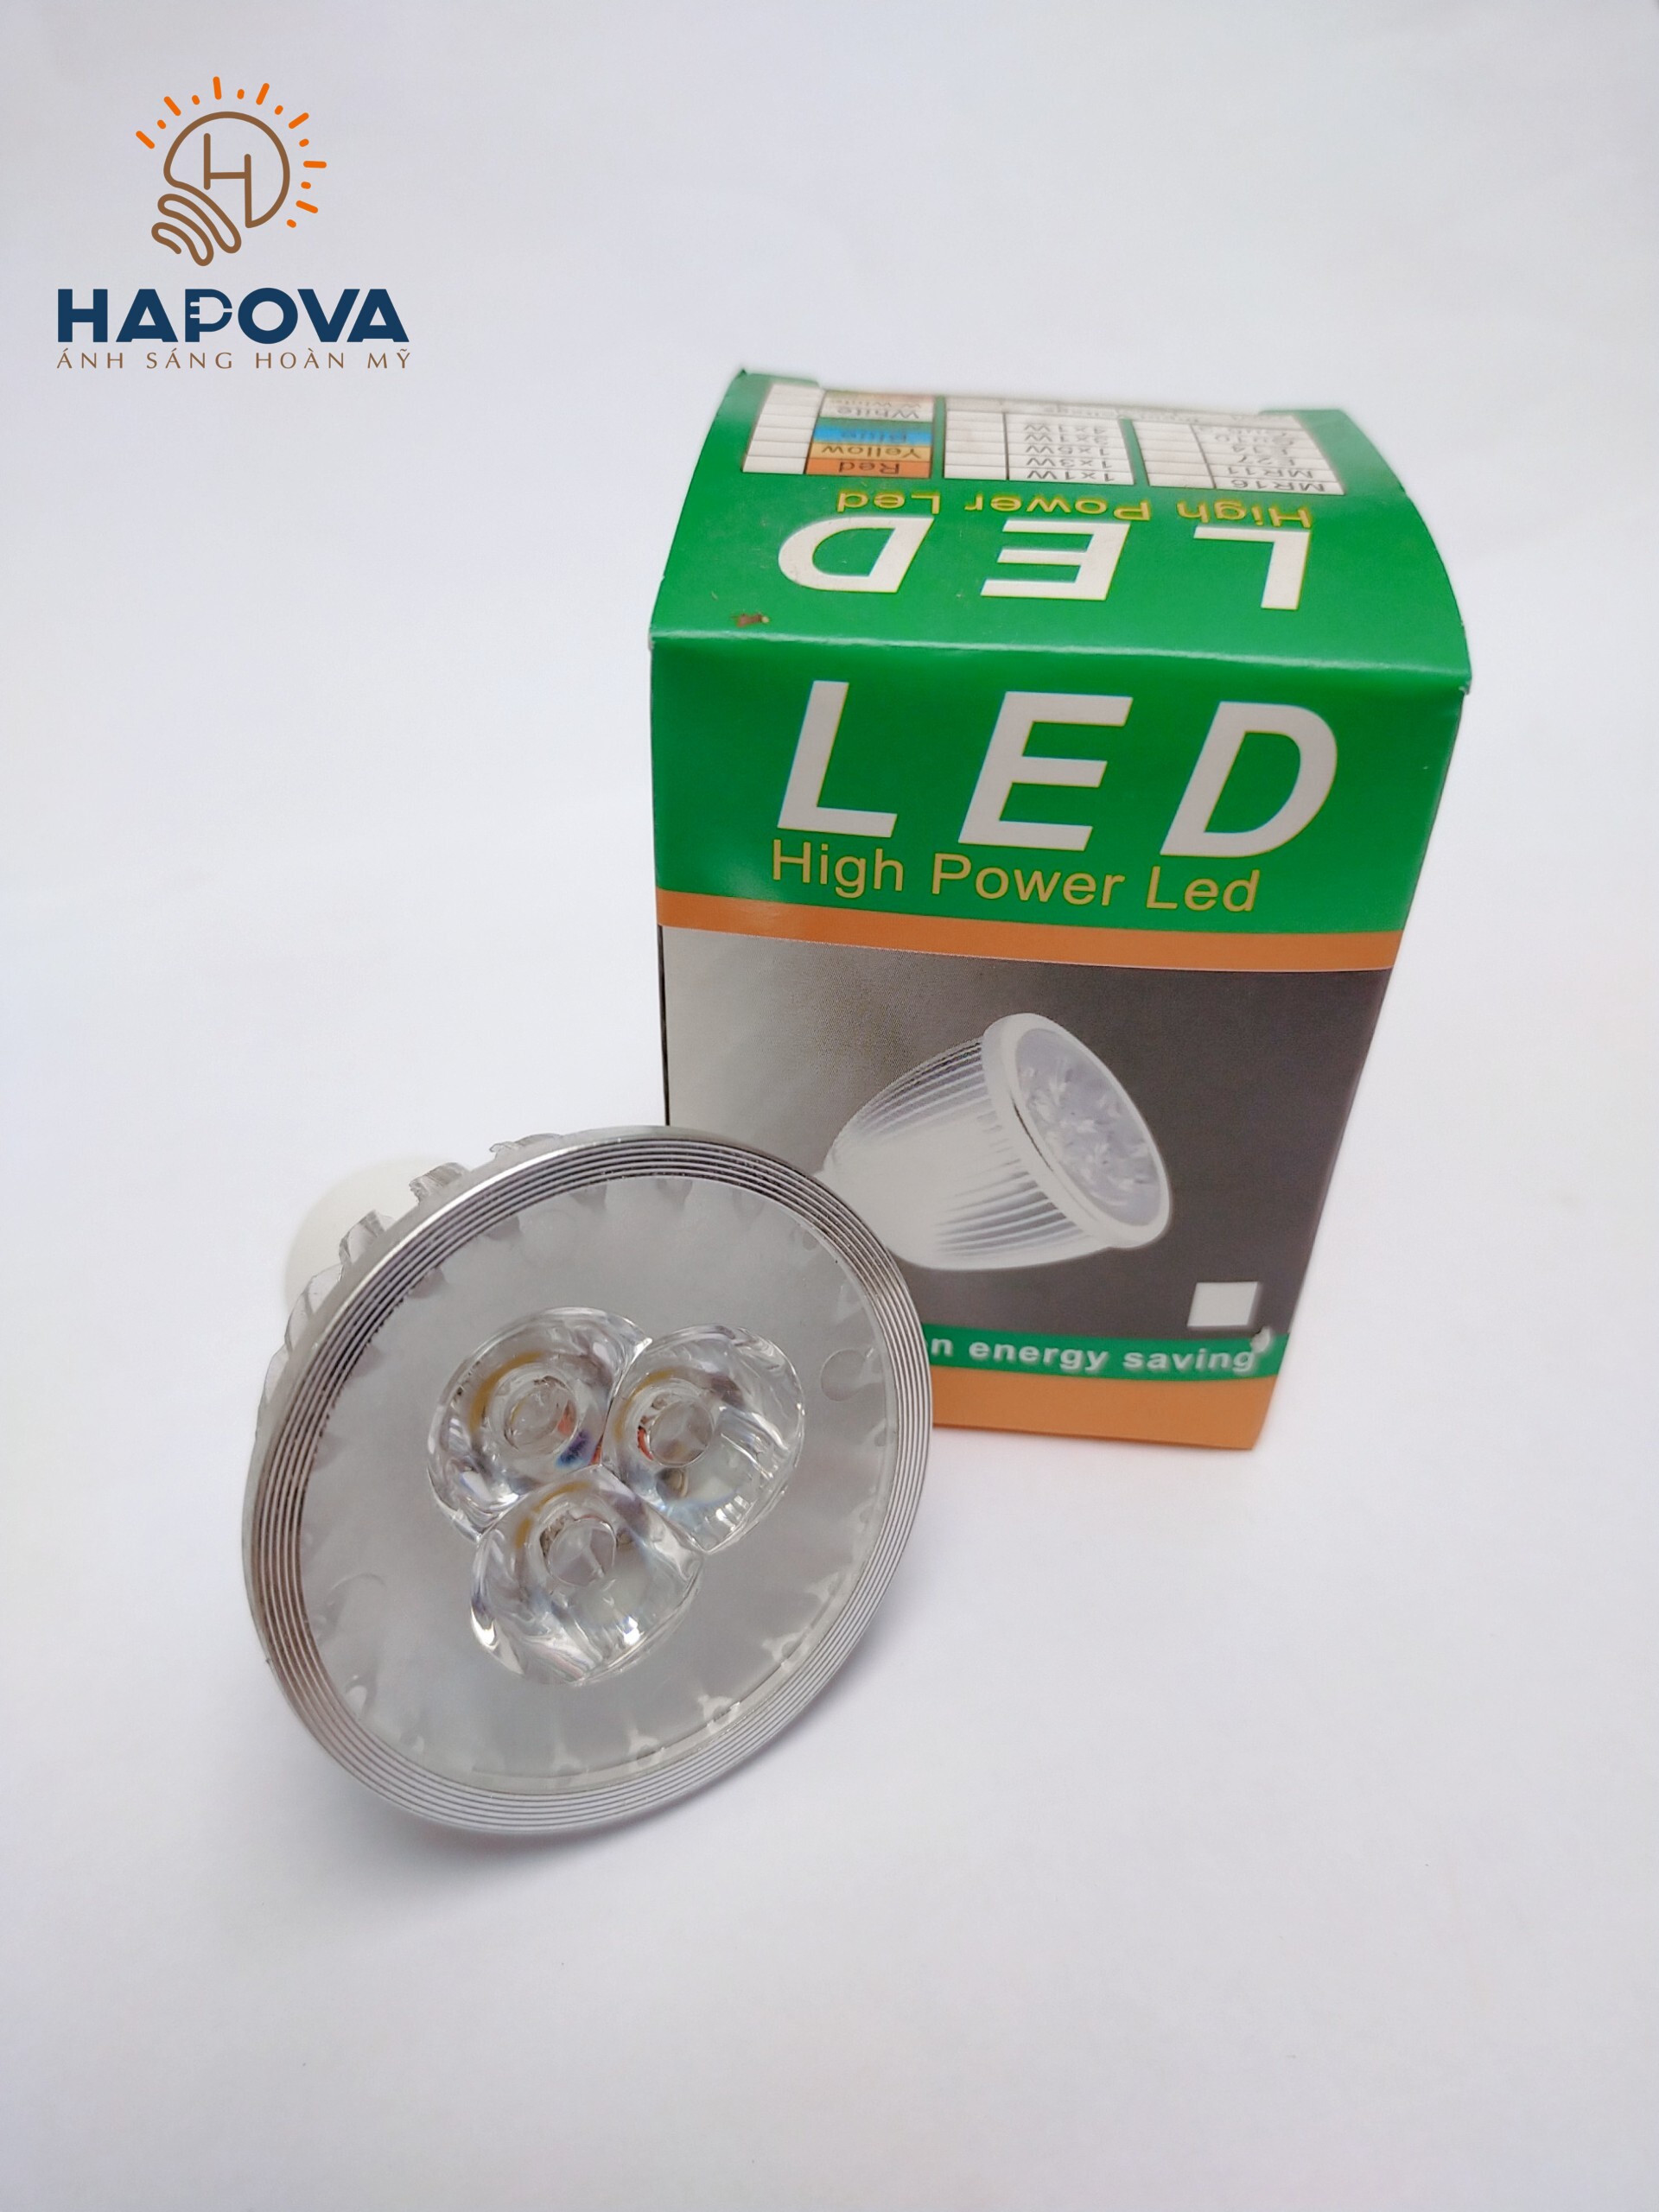 Bóng đèn led công suất HAPOVA RAWIN GU10